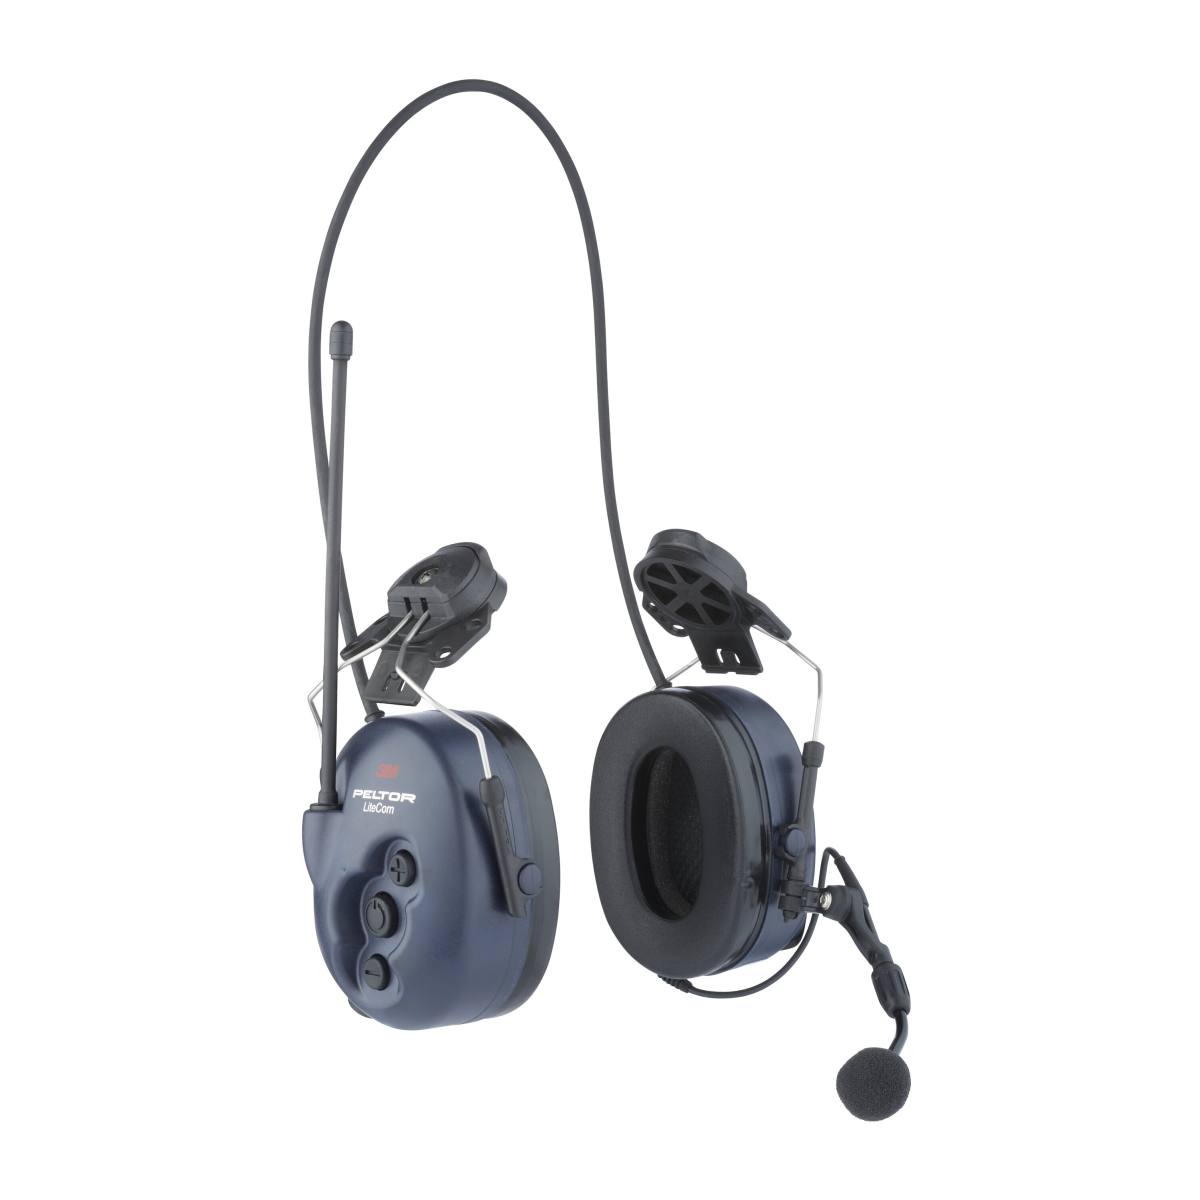 3M LiteCom avec fixation pour casque, radio PMR 446 intégrée, y compris microphone boom, SNR = 33 dB, bleu